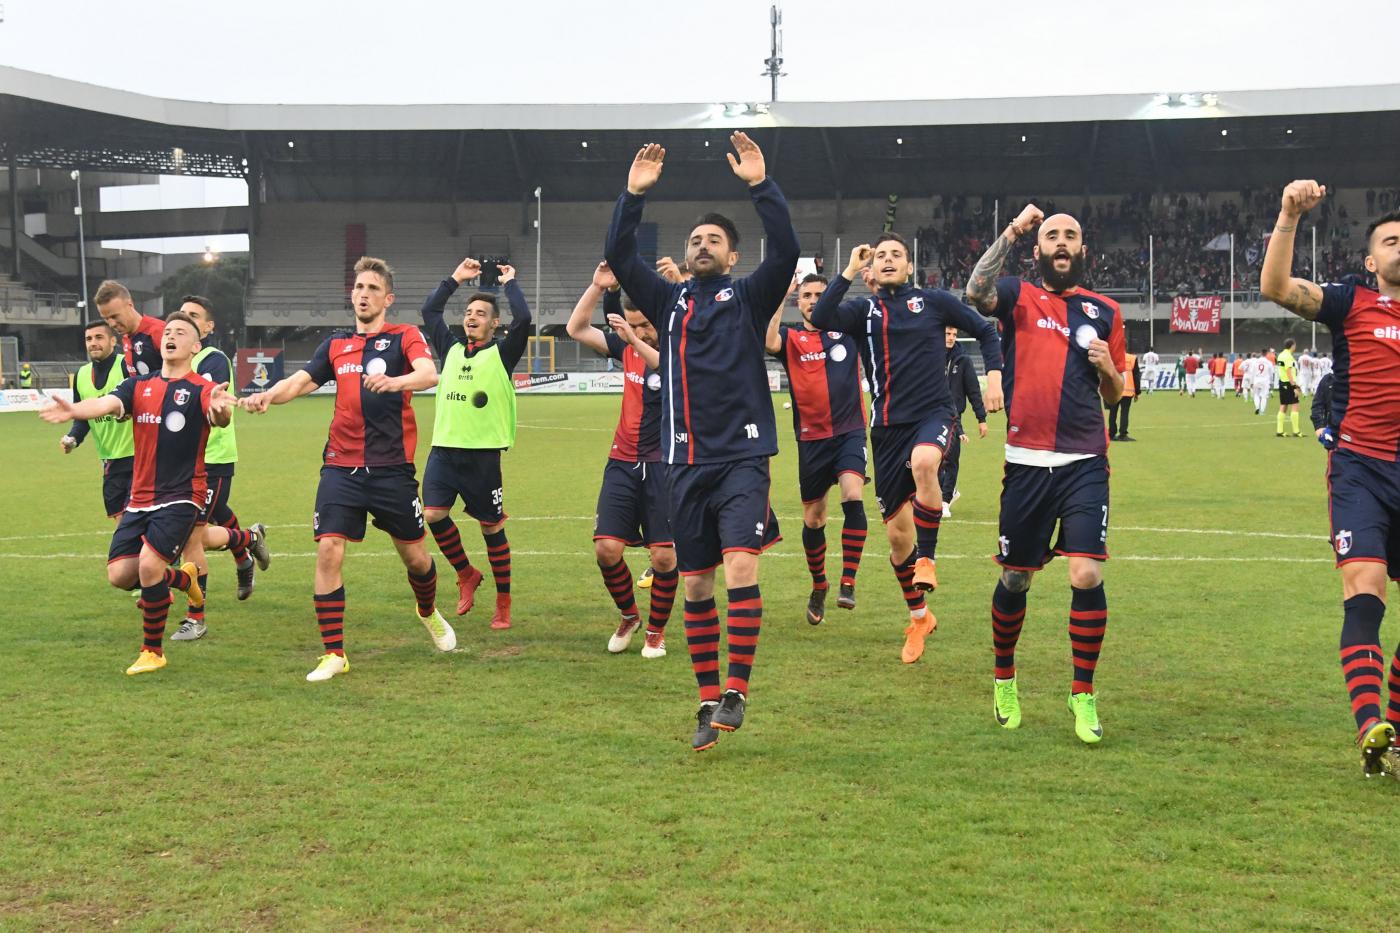 Sambenedettese-Piacenza mercoledì 23 maggio, analisi e pronostico Serie C ritorno playoff